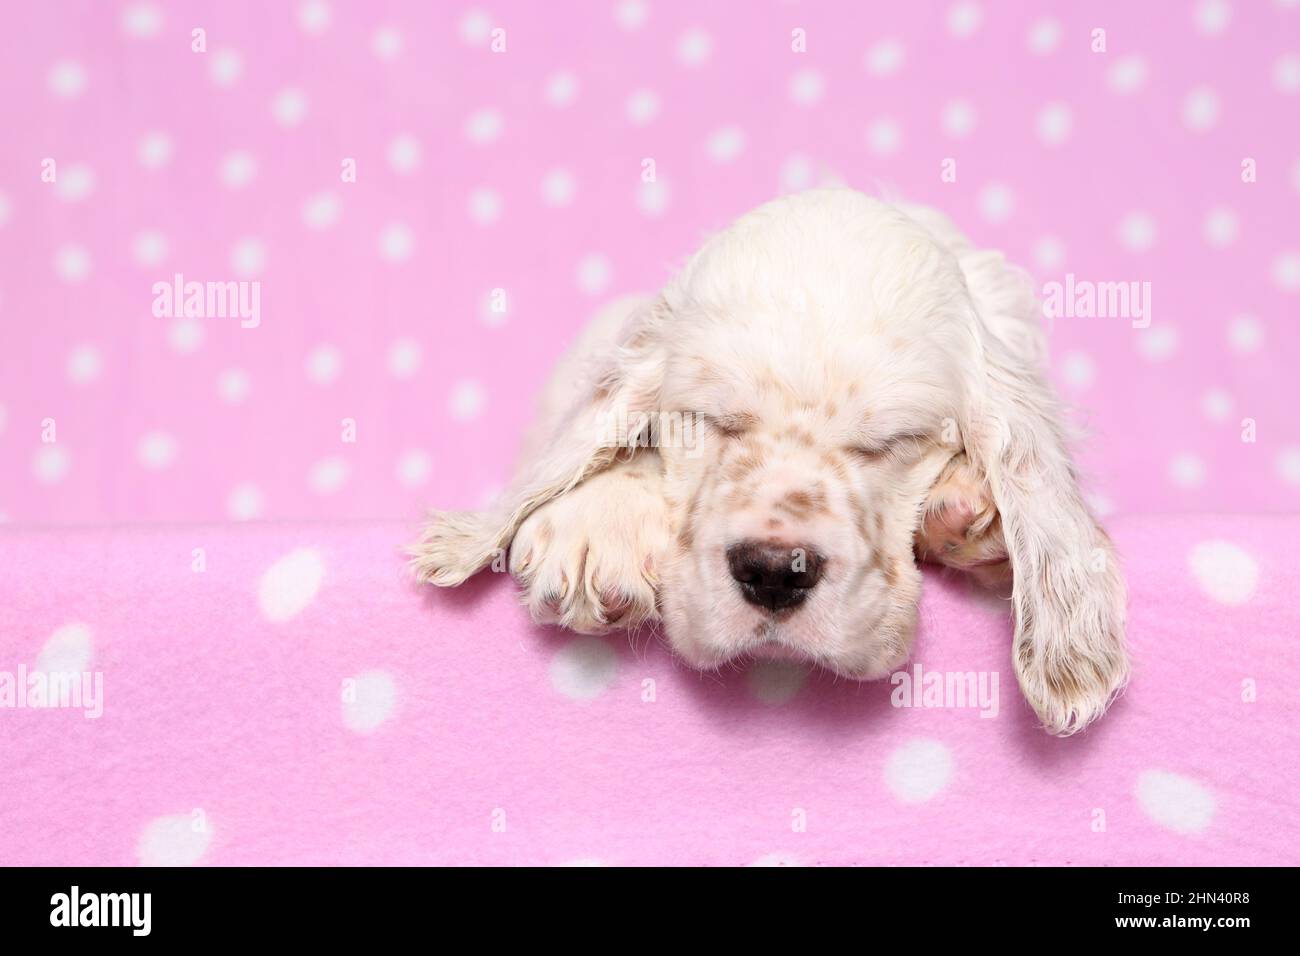 Setter anglais. Chiot dormant sur une couverture rose avec des pois. Allemagne Banque D'Images